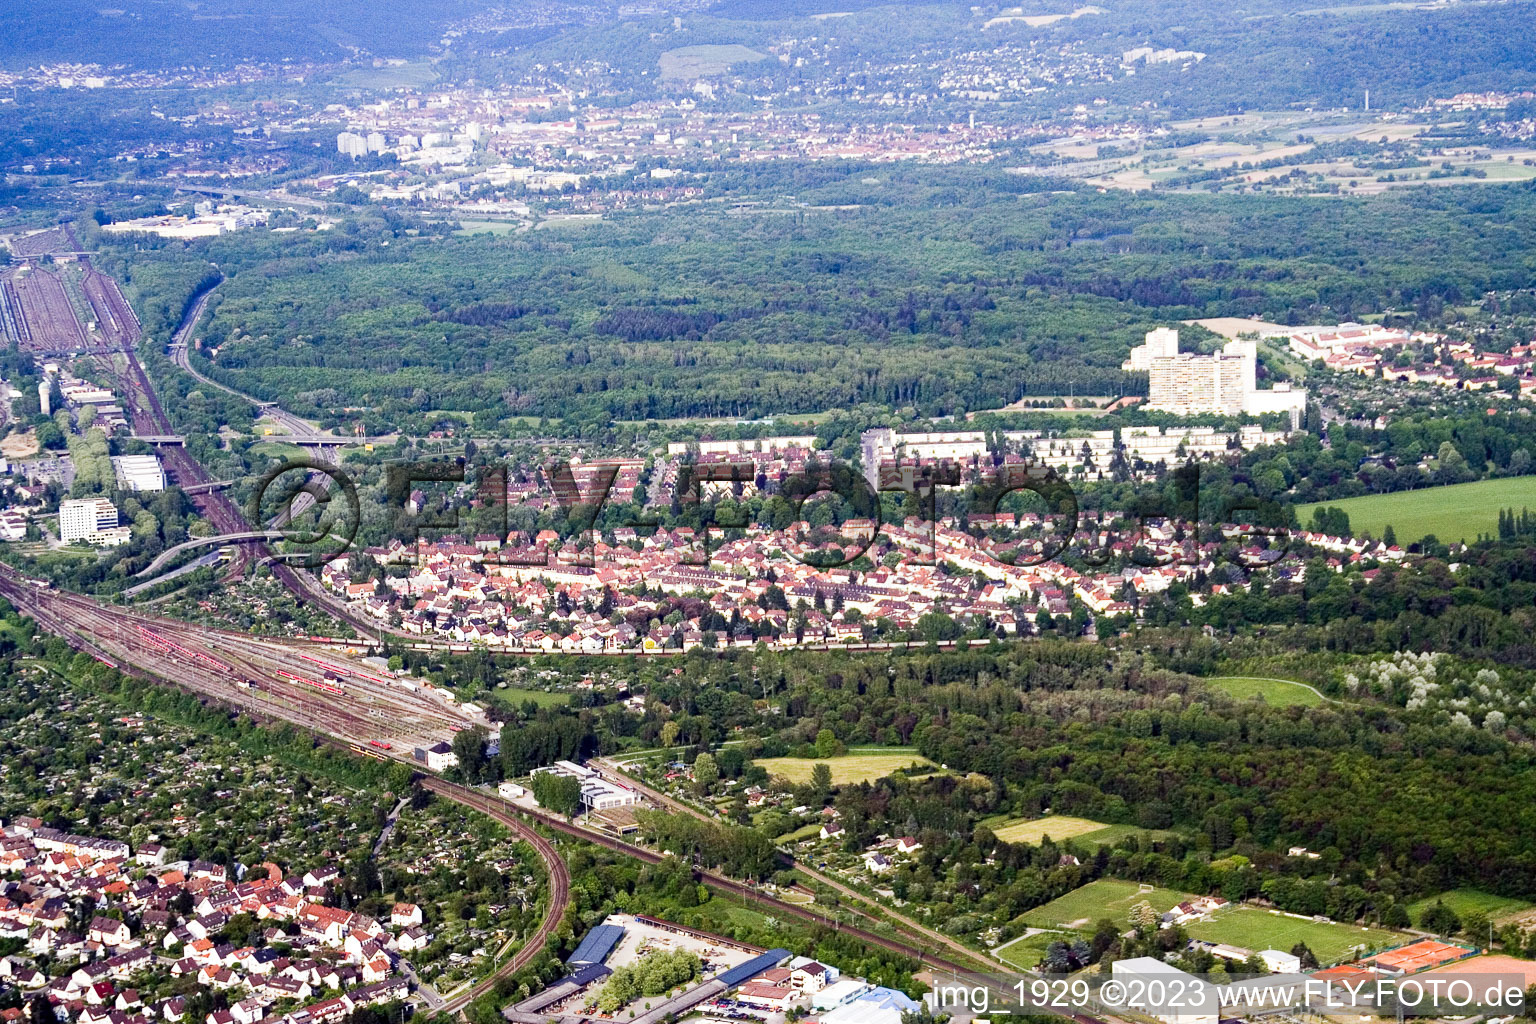 Luftbild von Dammerstock im Ortsteil Weiherfeld-Dammerstock in Karlsruhe im Bundesland Baden-Württemberg, Deutschland